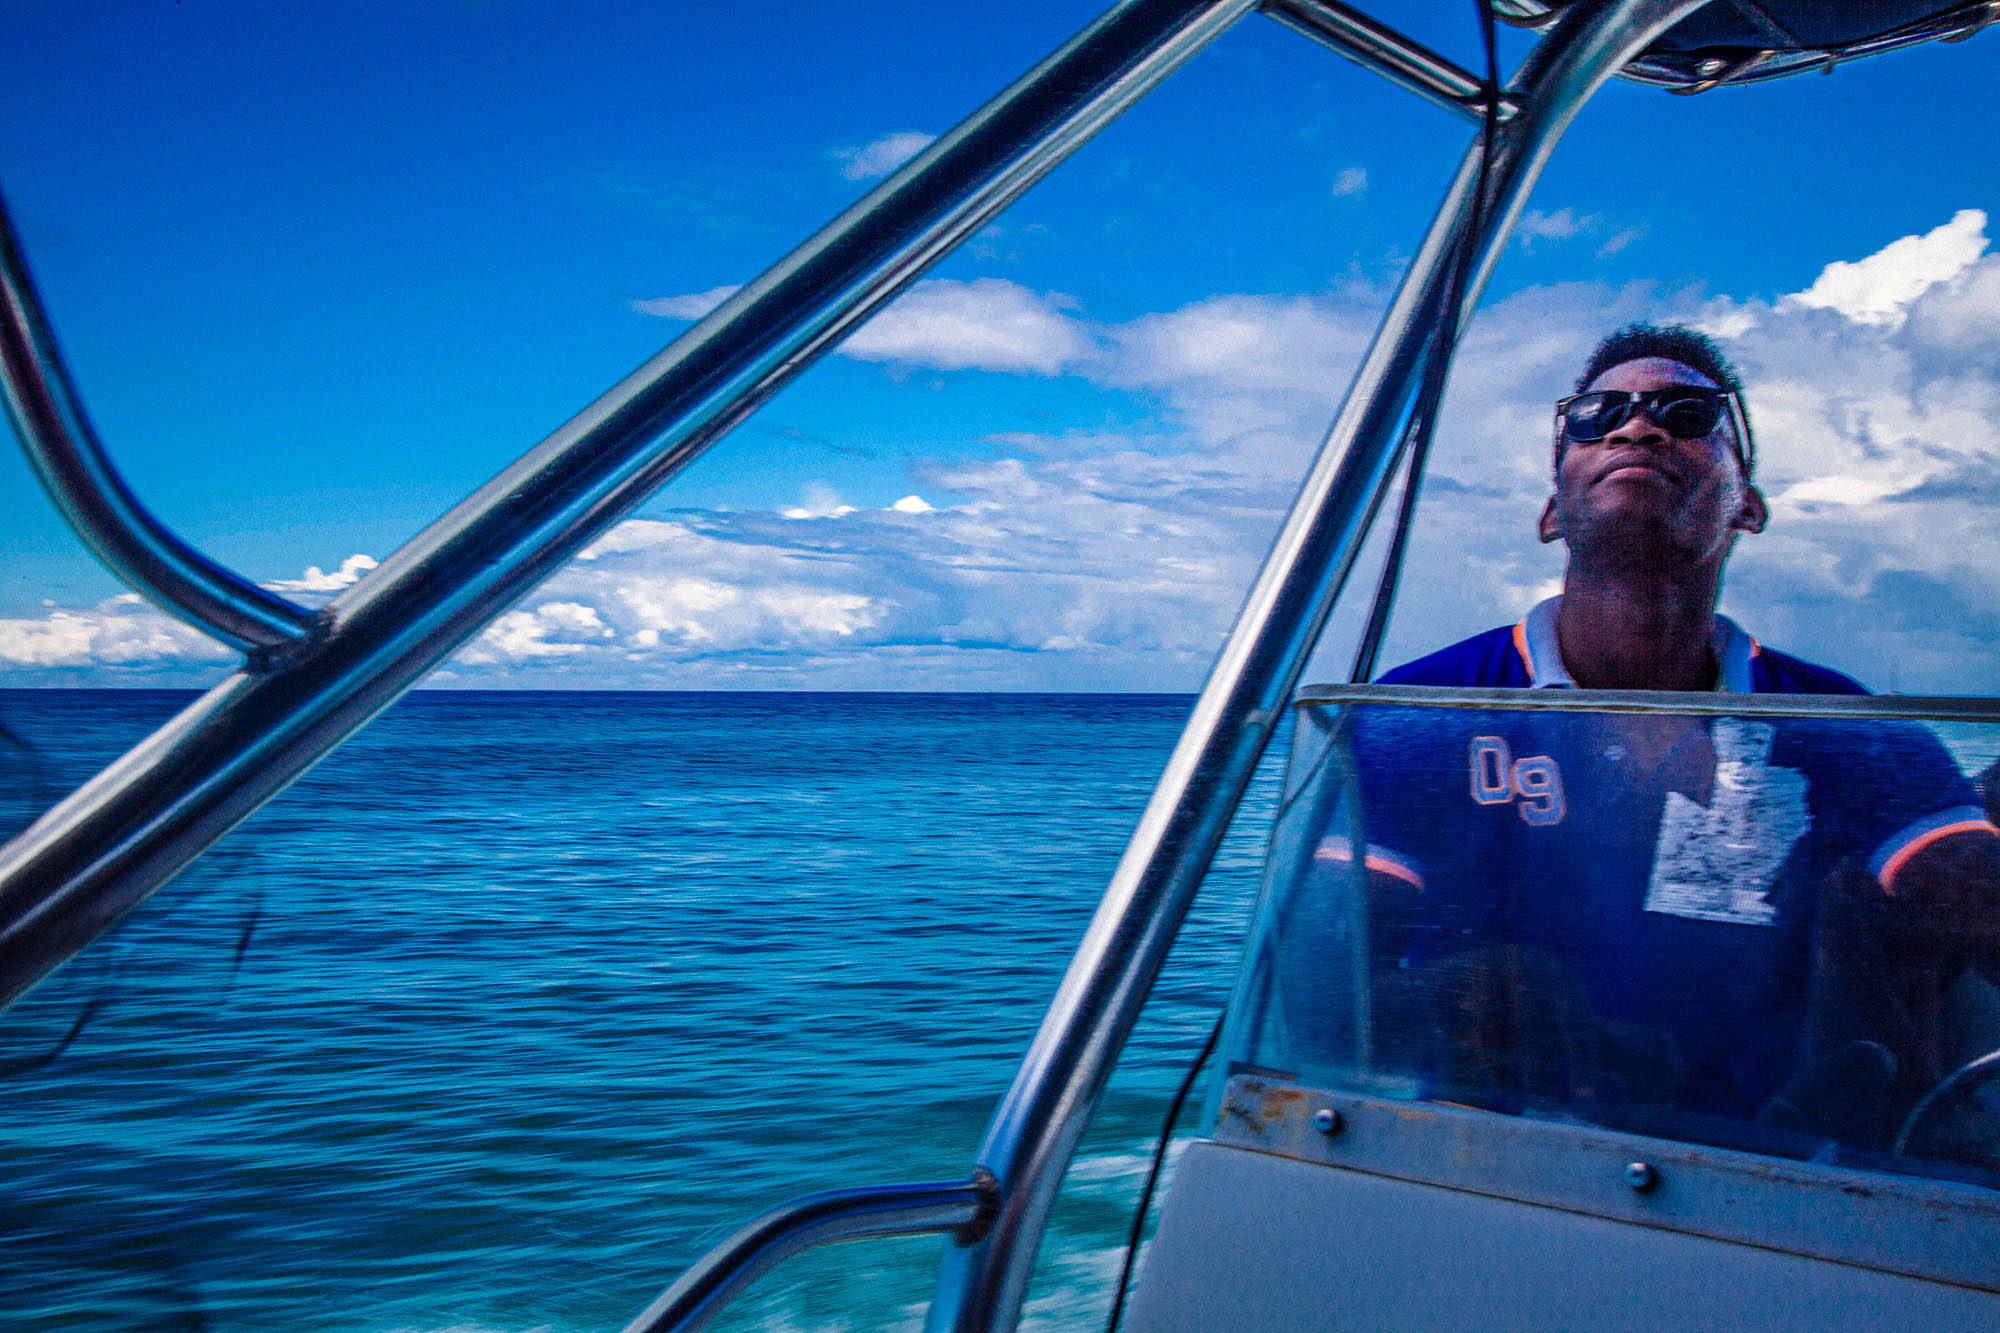 Captain of catamaran en route to Isla Saona, Dominican Republic